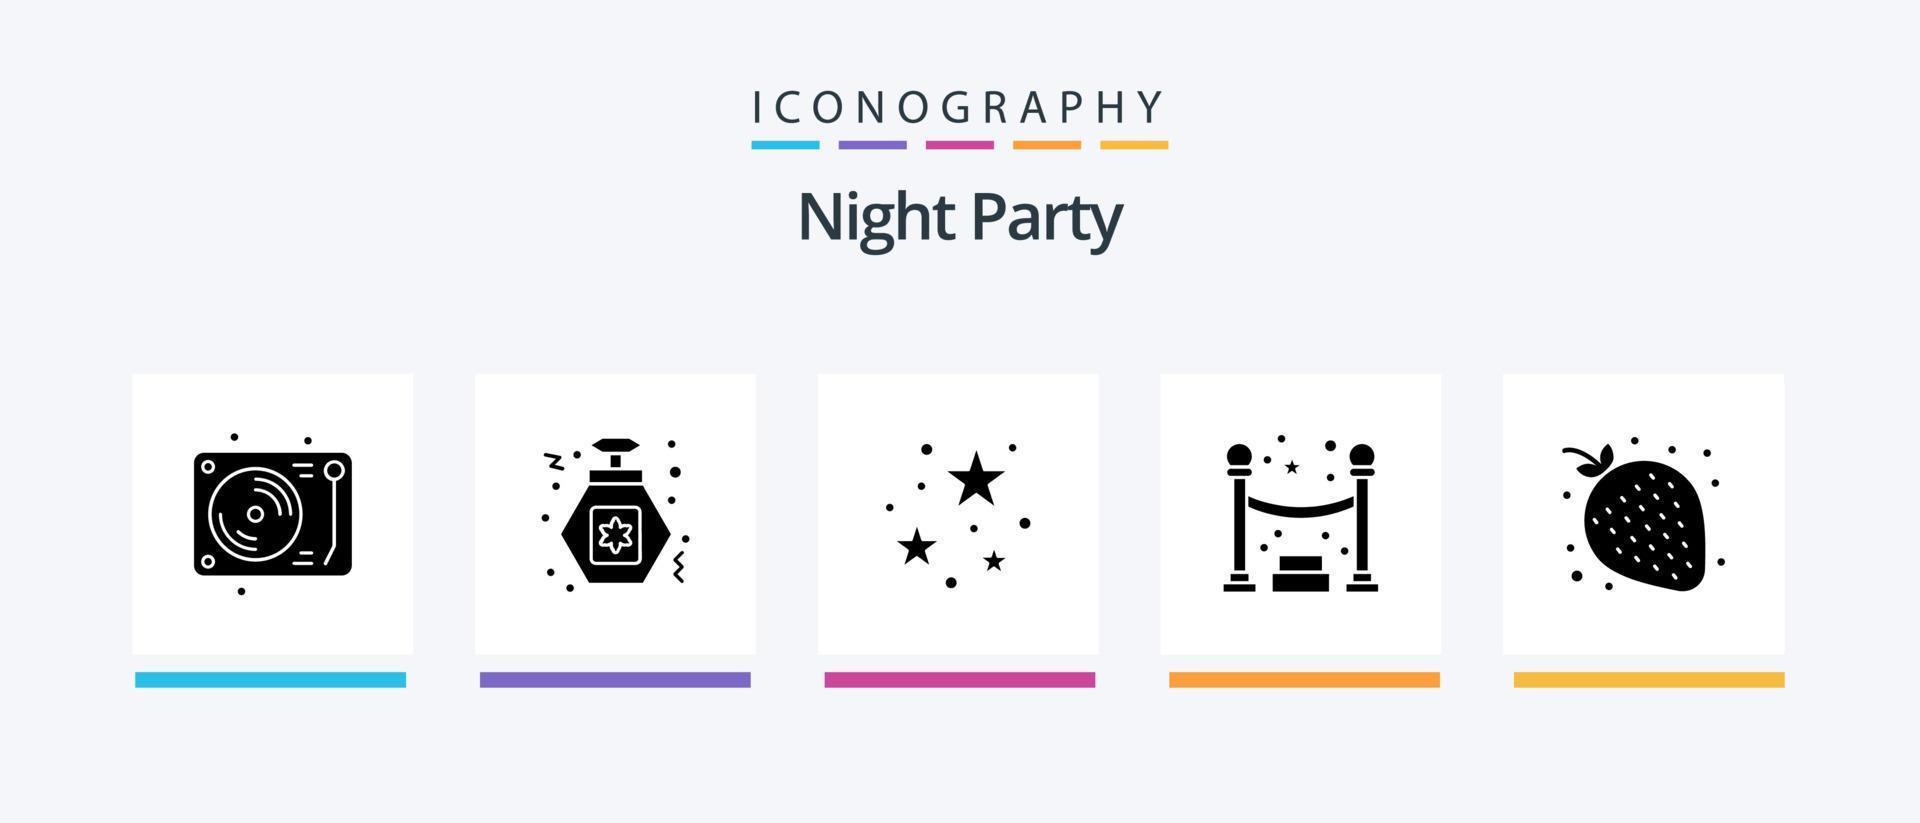 paquete de iconos de glifo 5 de fiesta nocturna que incluye noche. fresa. fiesta. Fruta. noche. diseño de iconos creativos vector